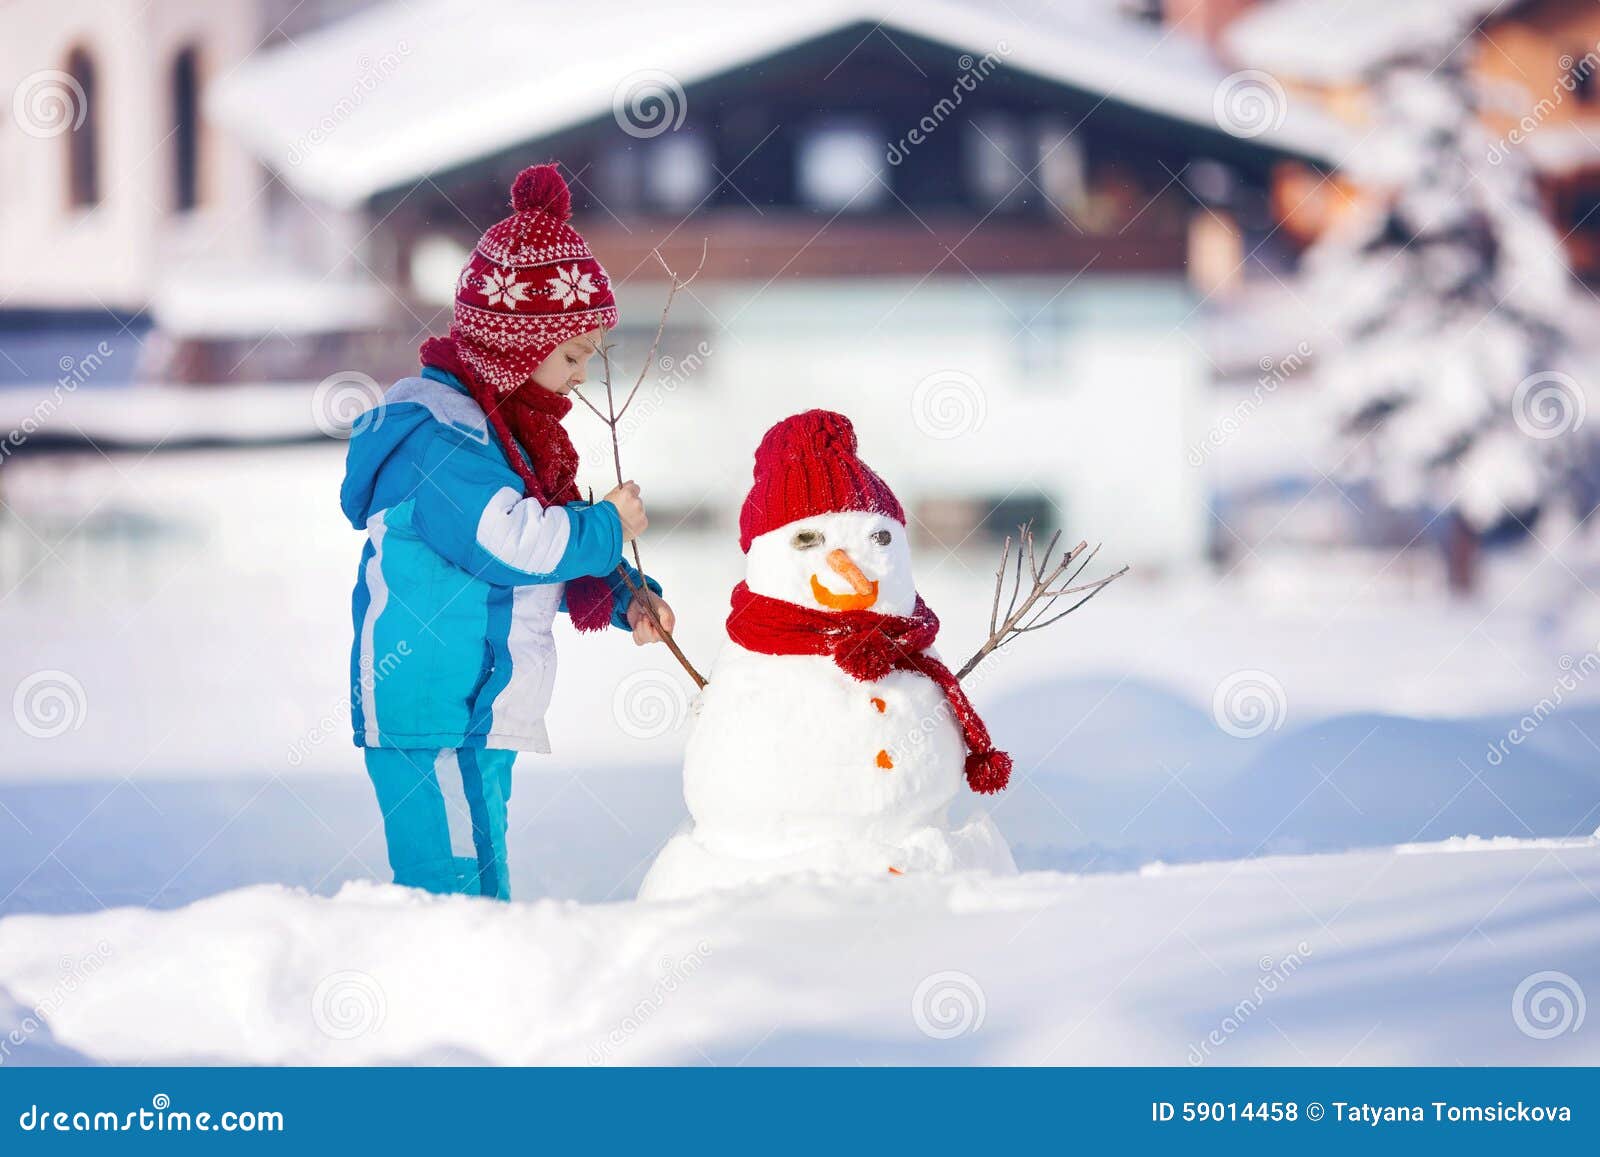 Самого стильного снеговика и очаровательную снежную бабу ждут в зоопарке